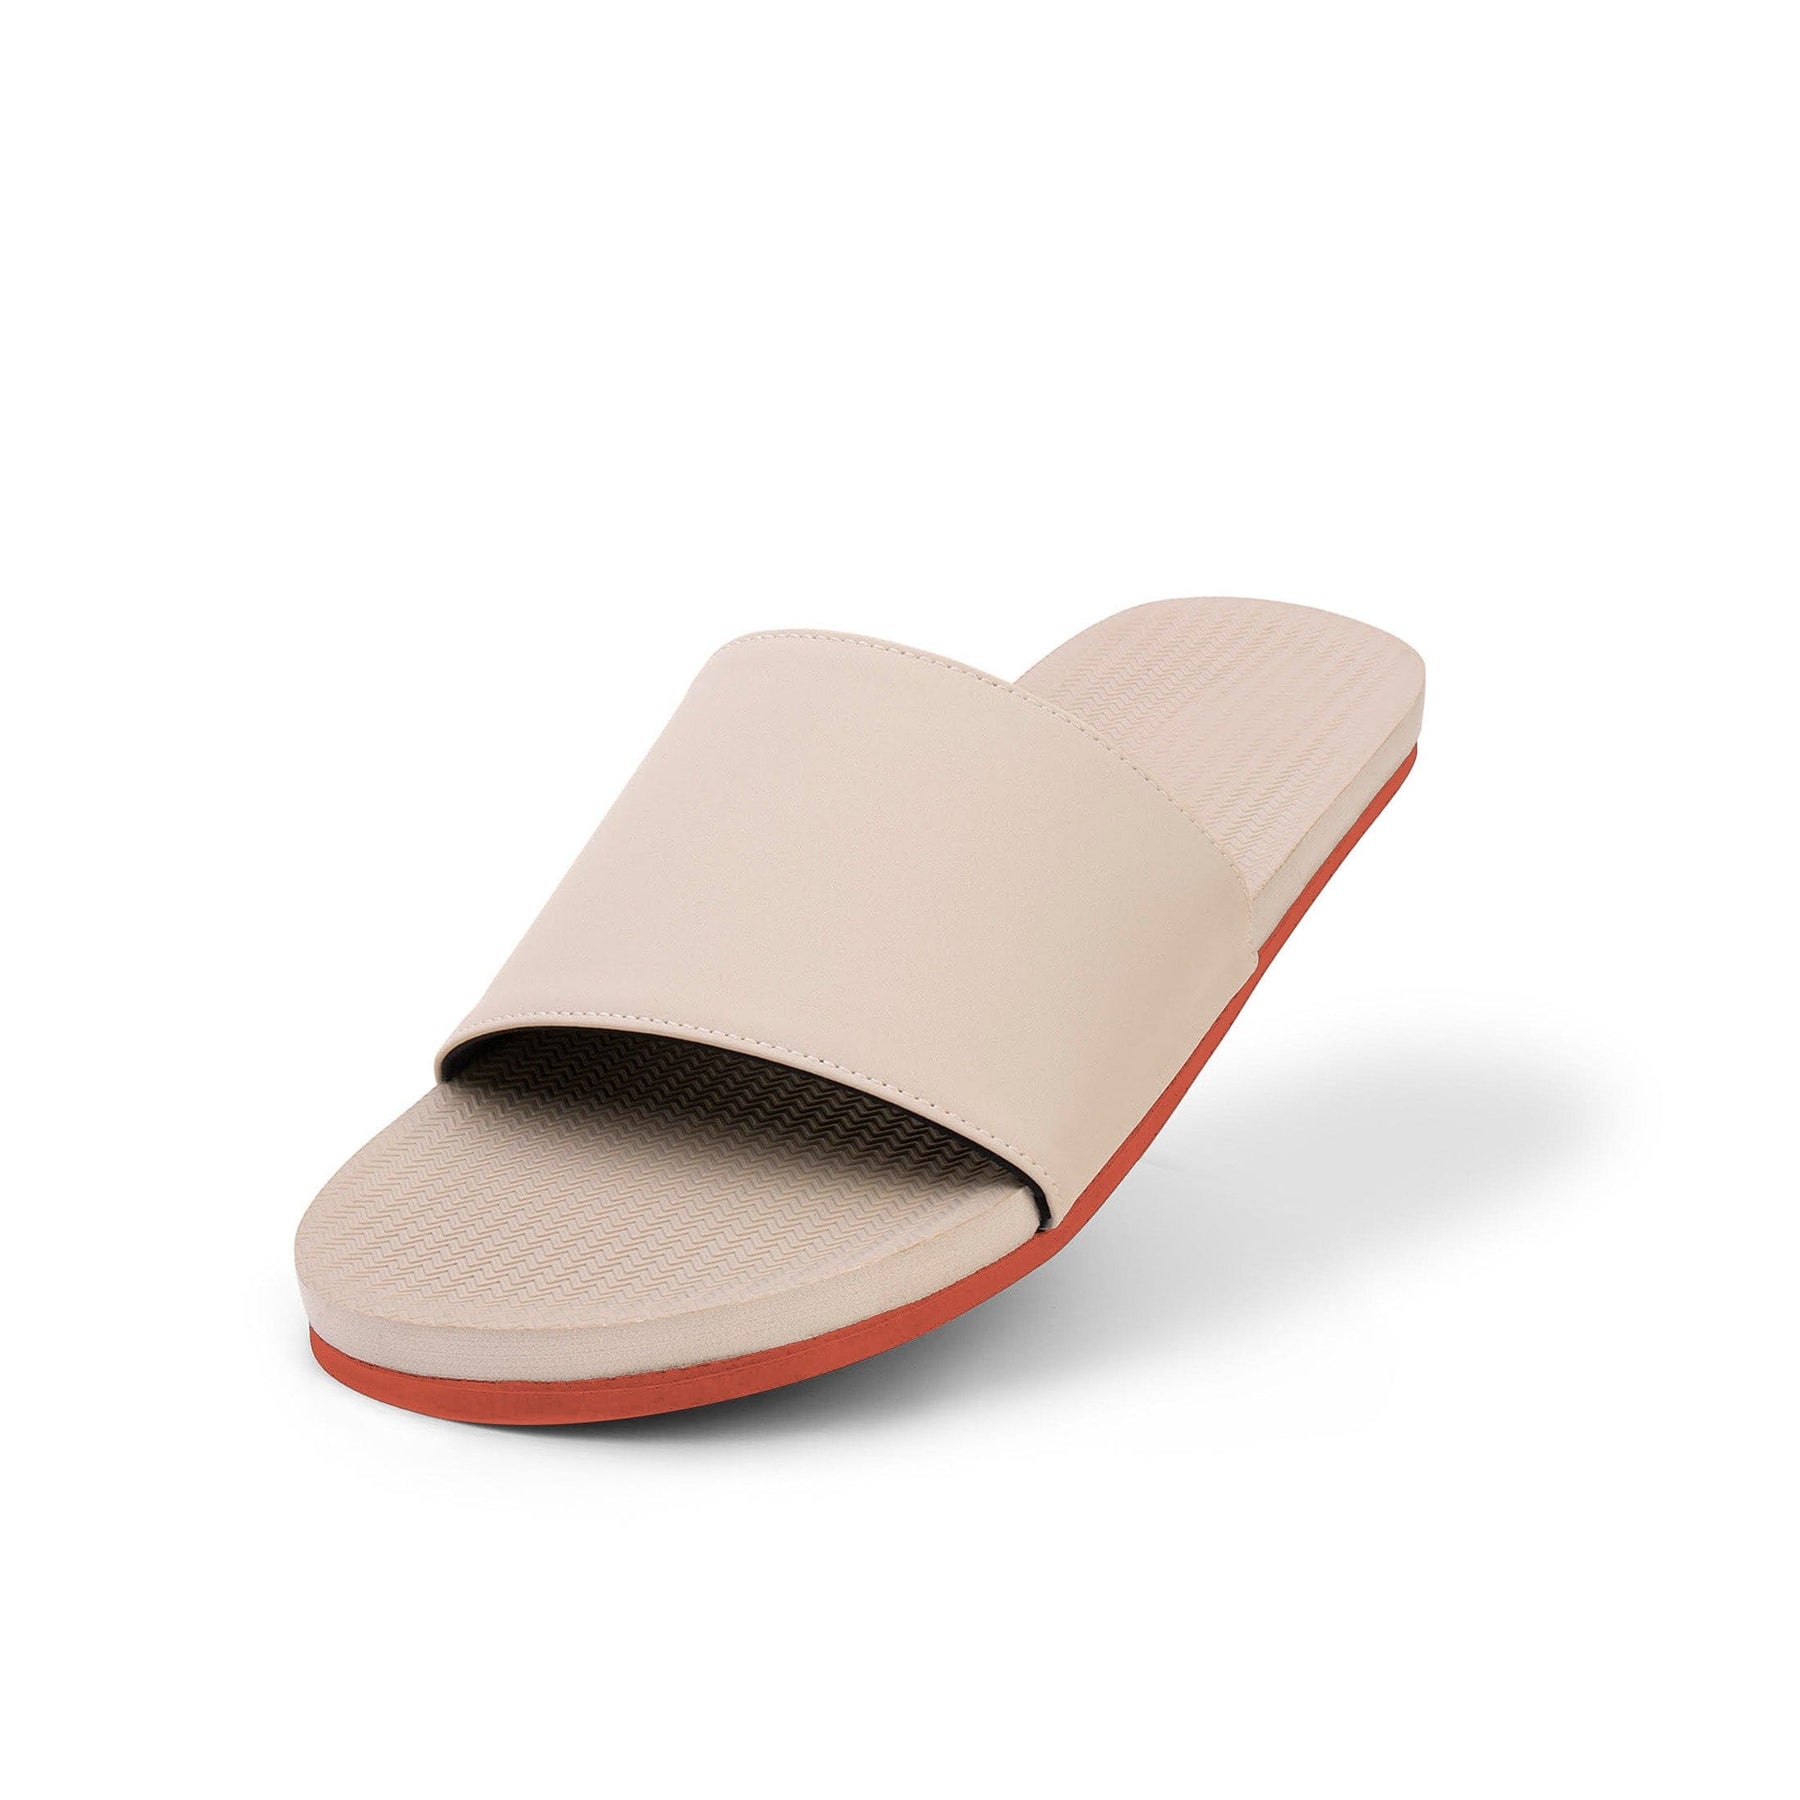 Women's Slide Sneaker Sole - Sea Salt/Orange Sole - Indosole